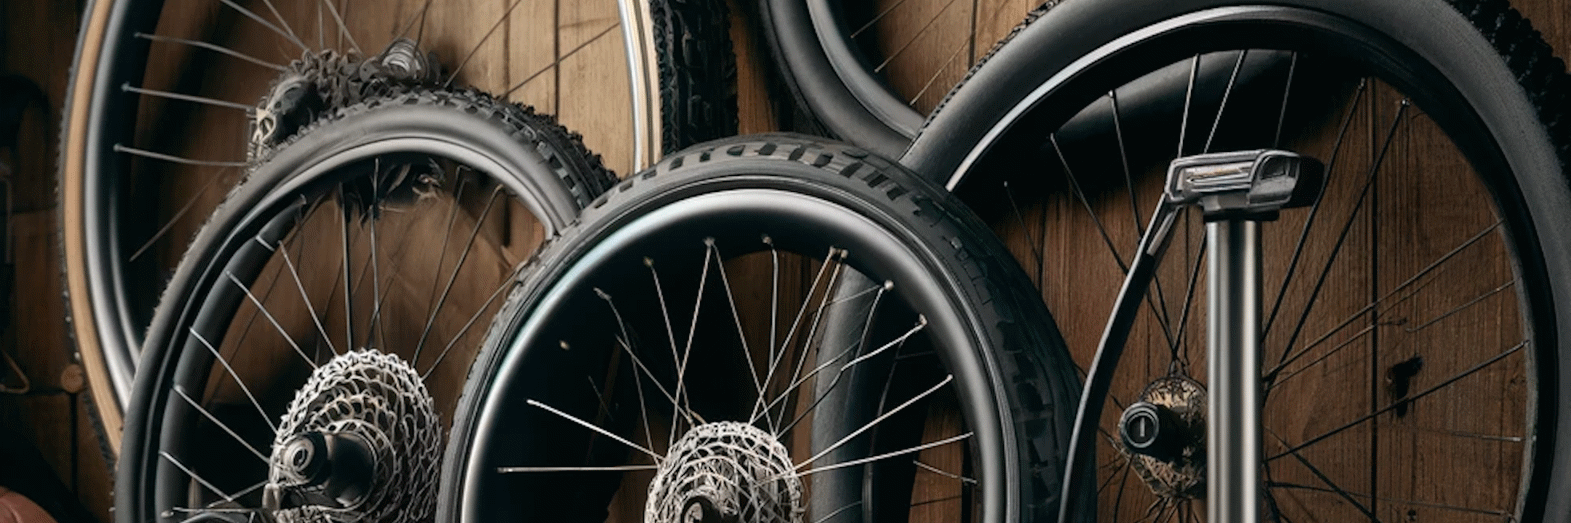 Hvad er det rette lufttryk? | Læs om cykeldæktryk | Alex Cykler